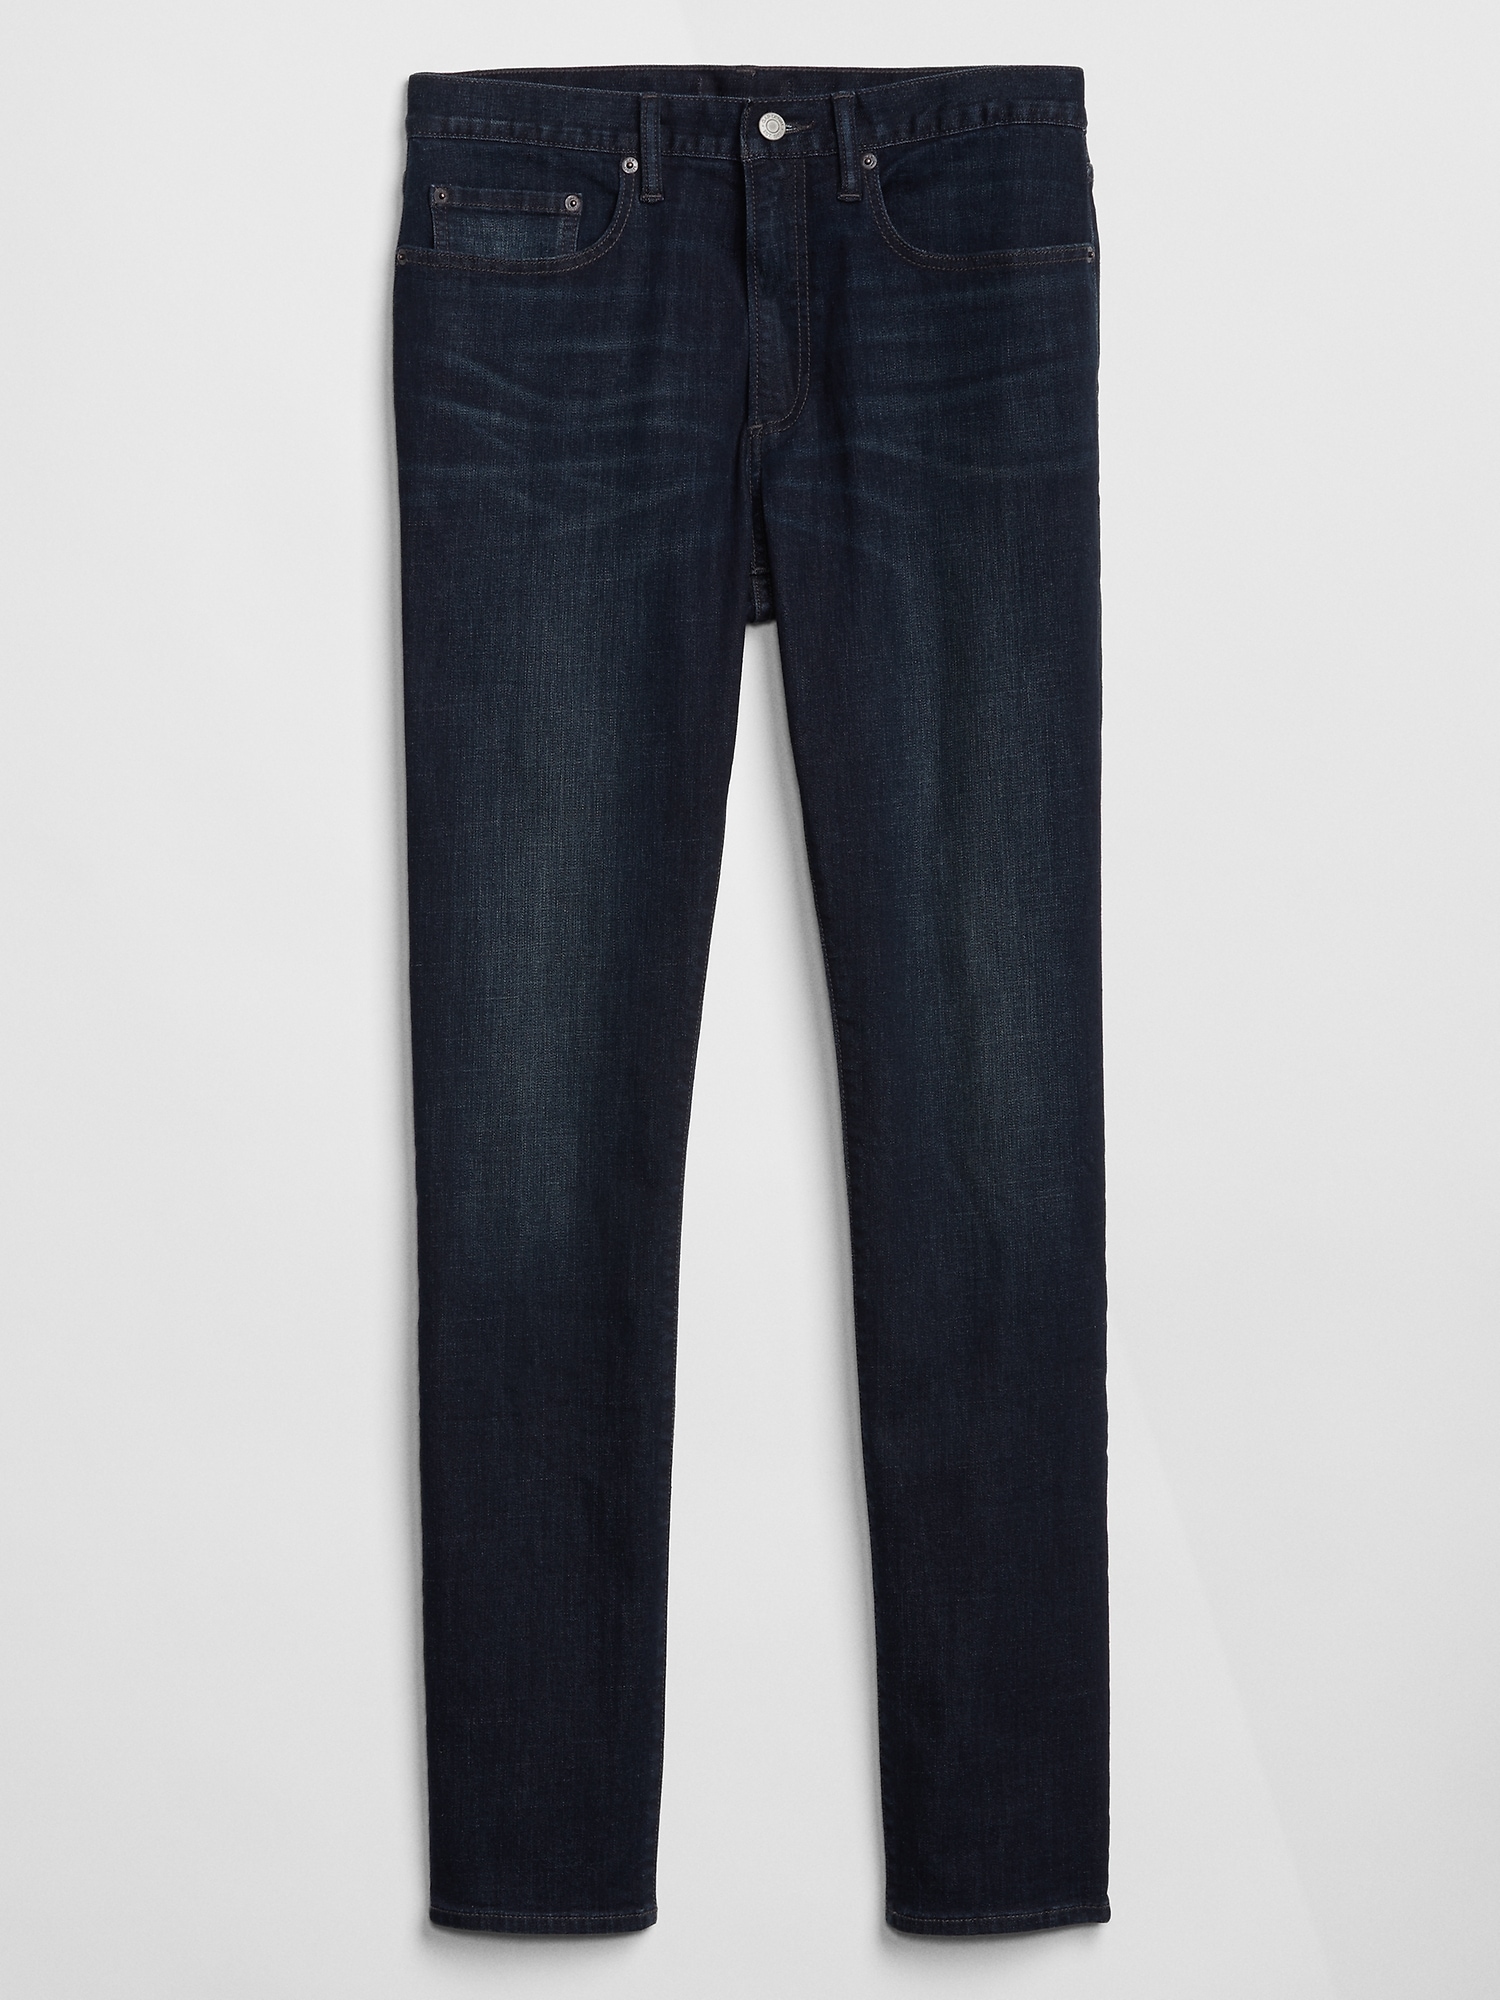 Slim GapFlex Soft | Gap Wear Factory Jeans with Washwell